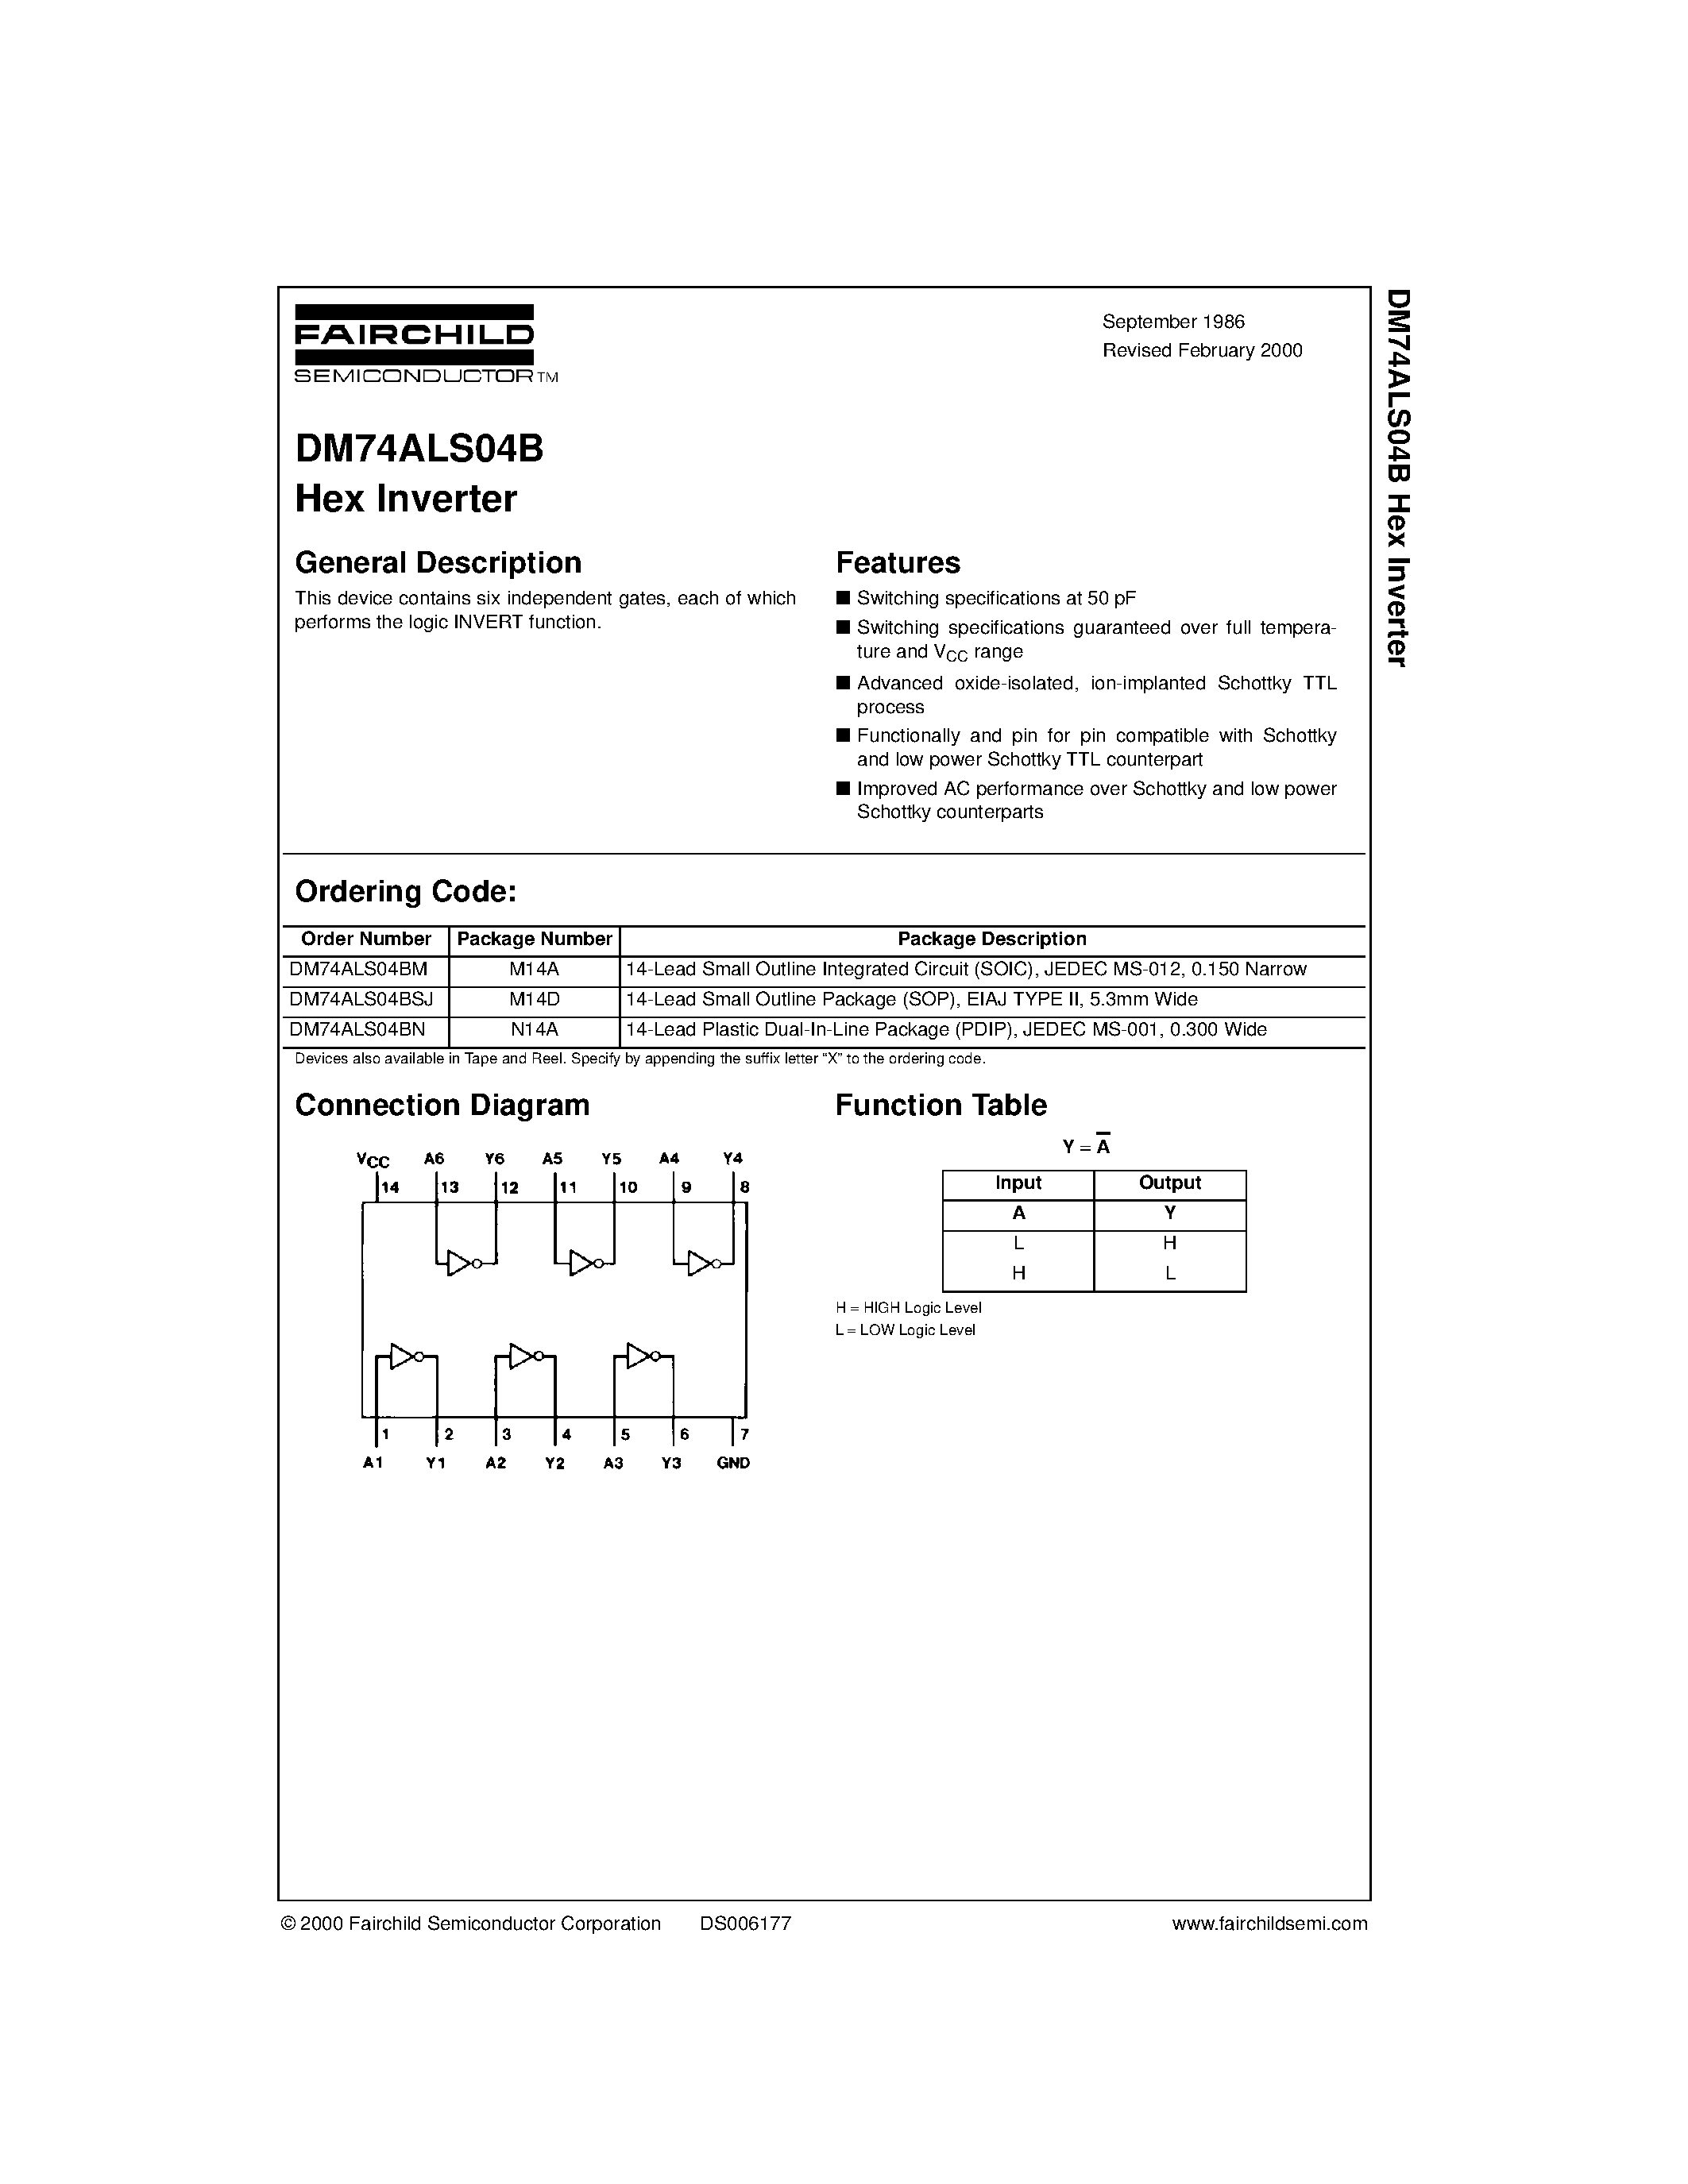 Datasheet DM74ALS04BSJ - Hex Inverter page 1